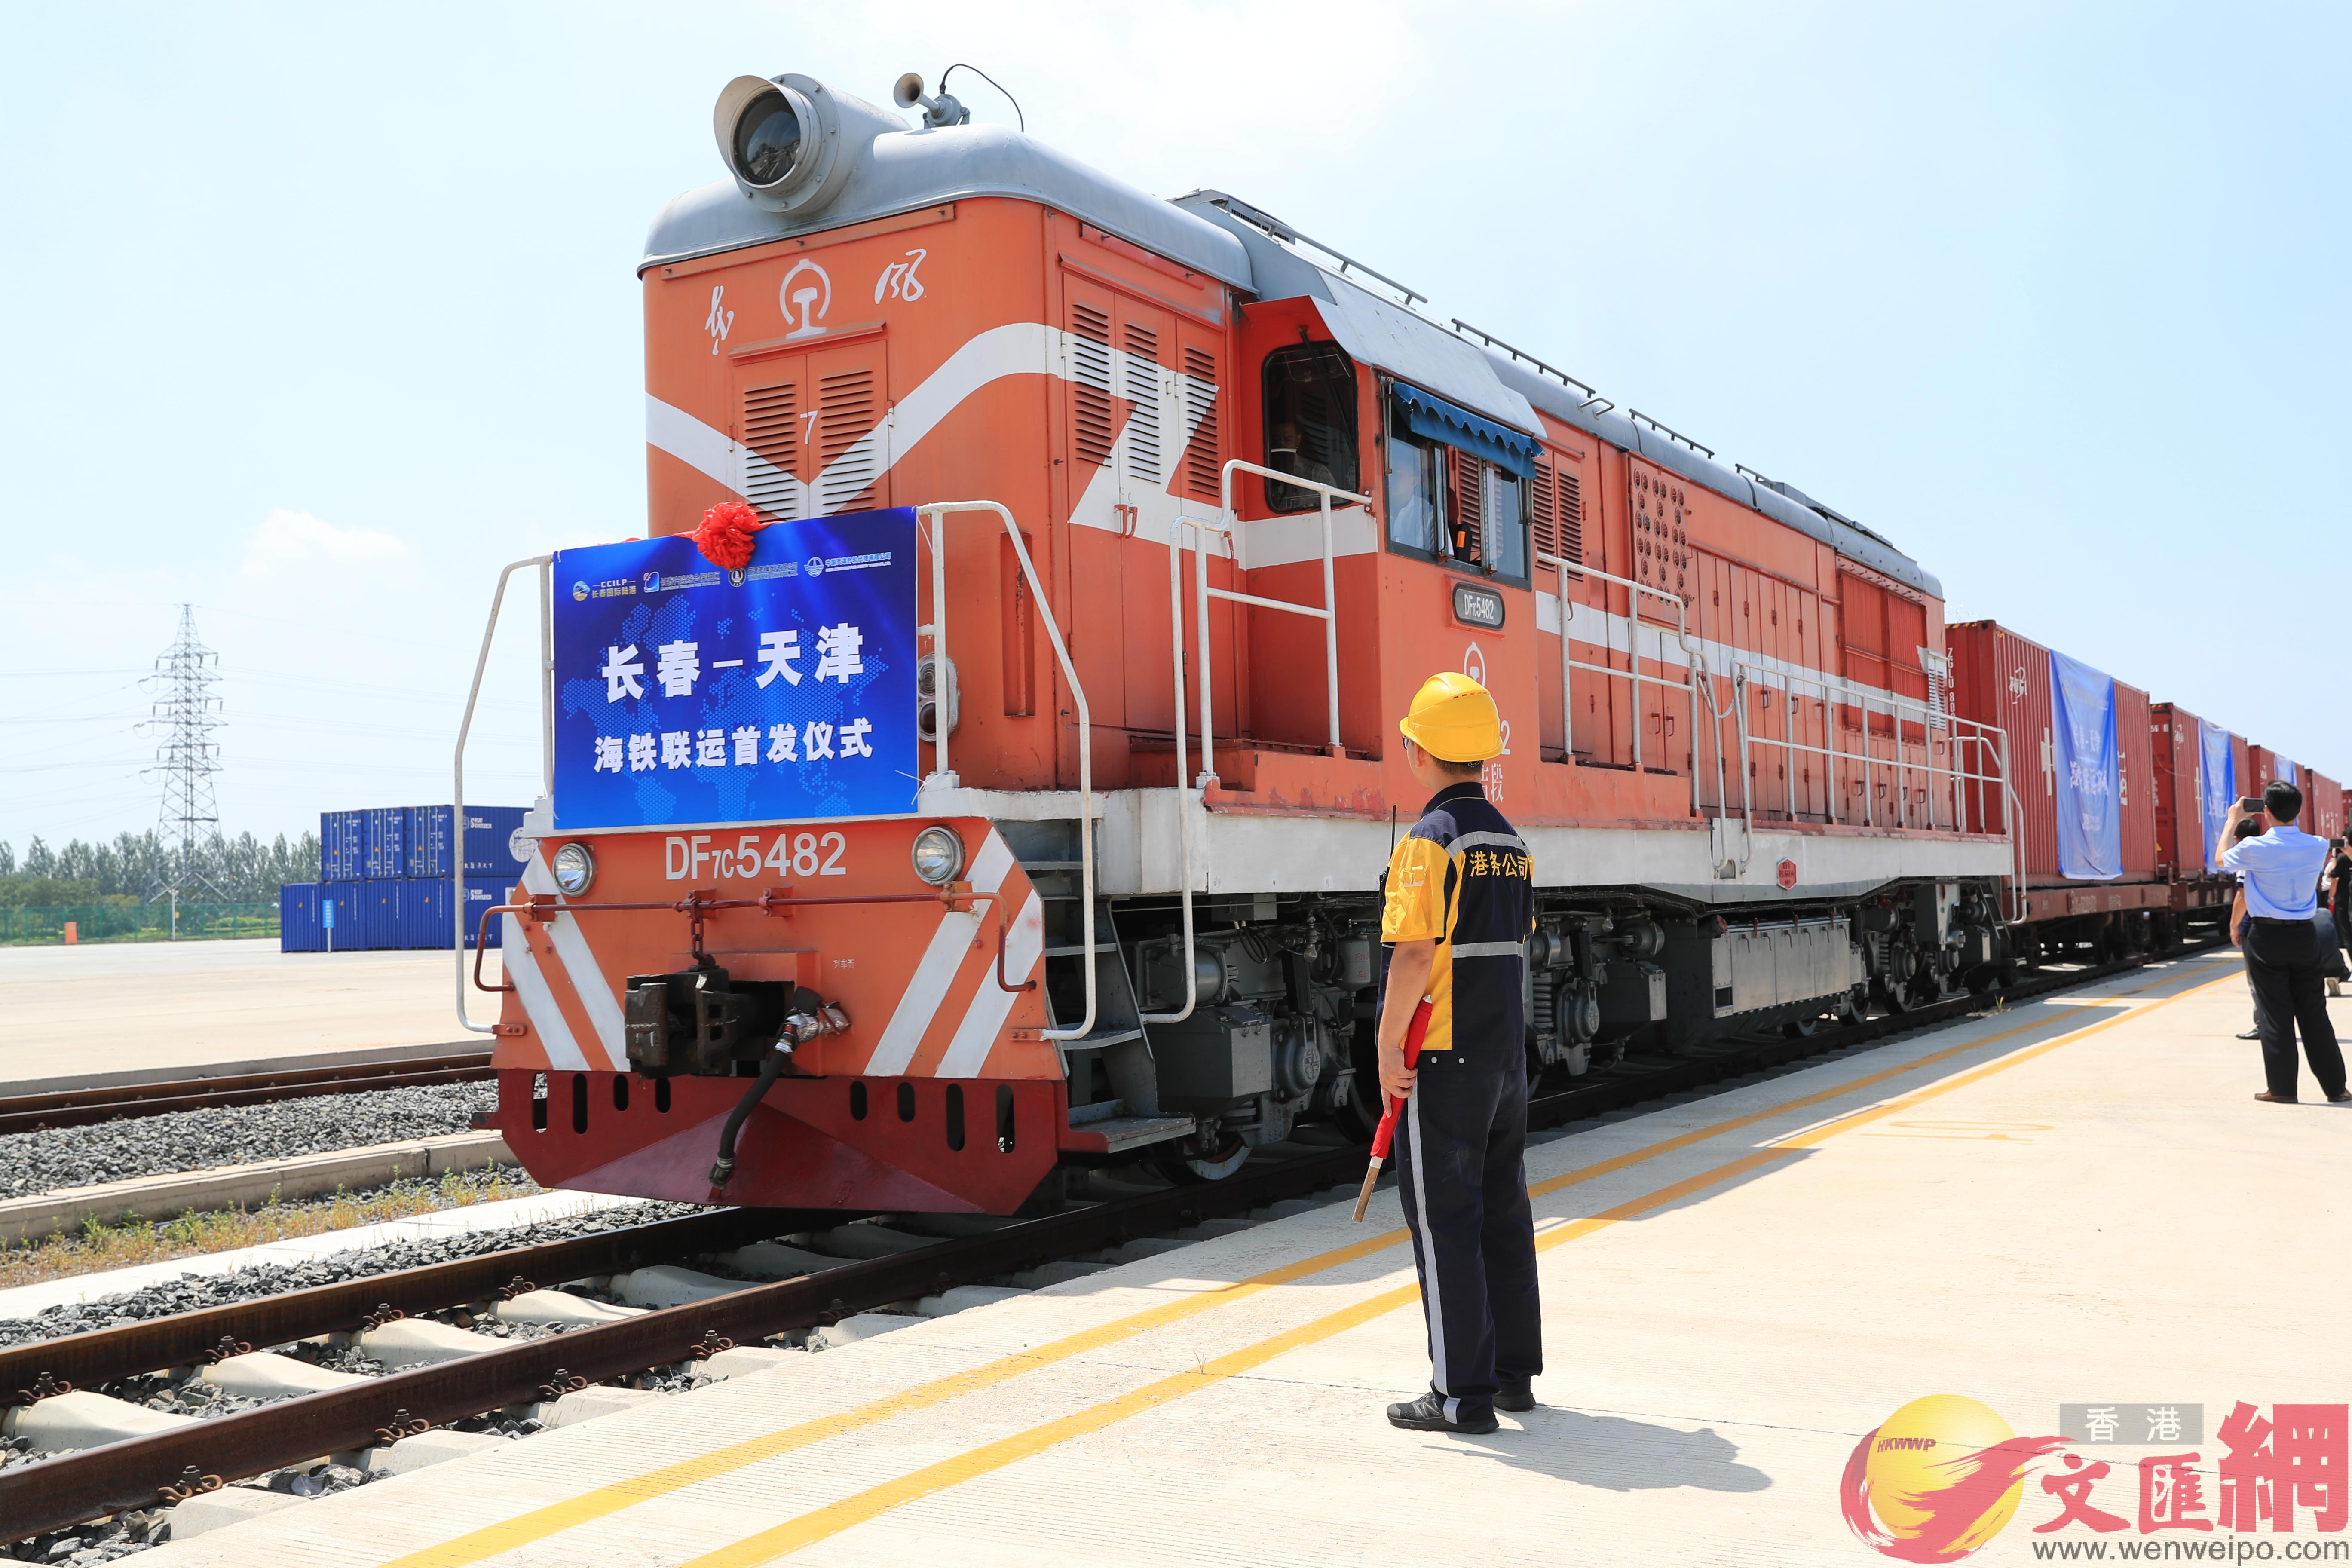 通過區域鐵路支線運輸與天津港的無縫對接A老工業基地吉林再增出海新通道C]文匯網記者 盧冶 攝^